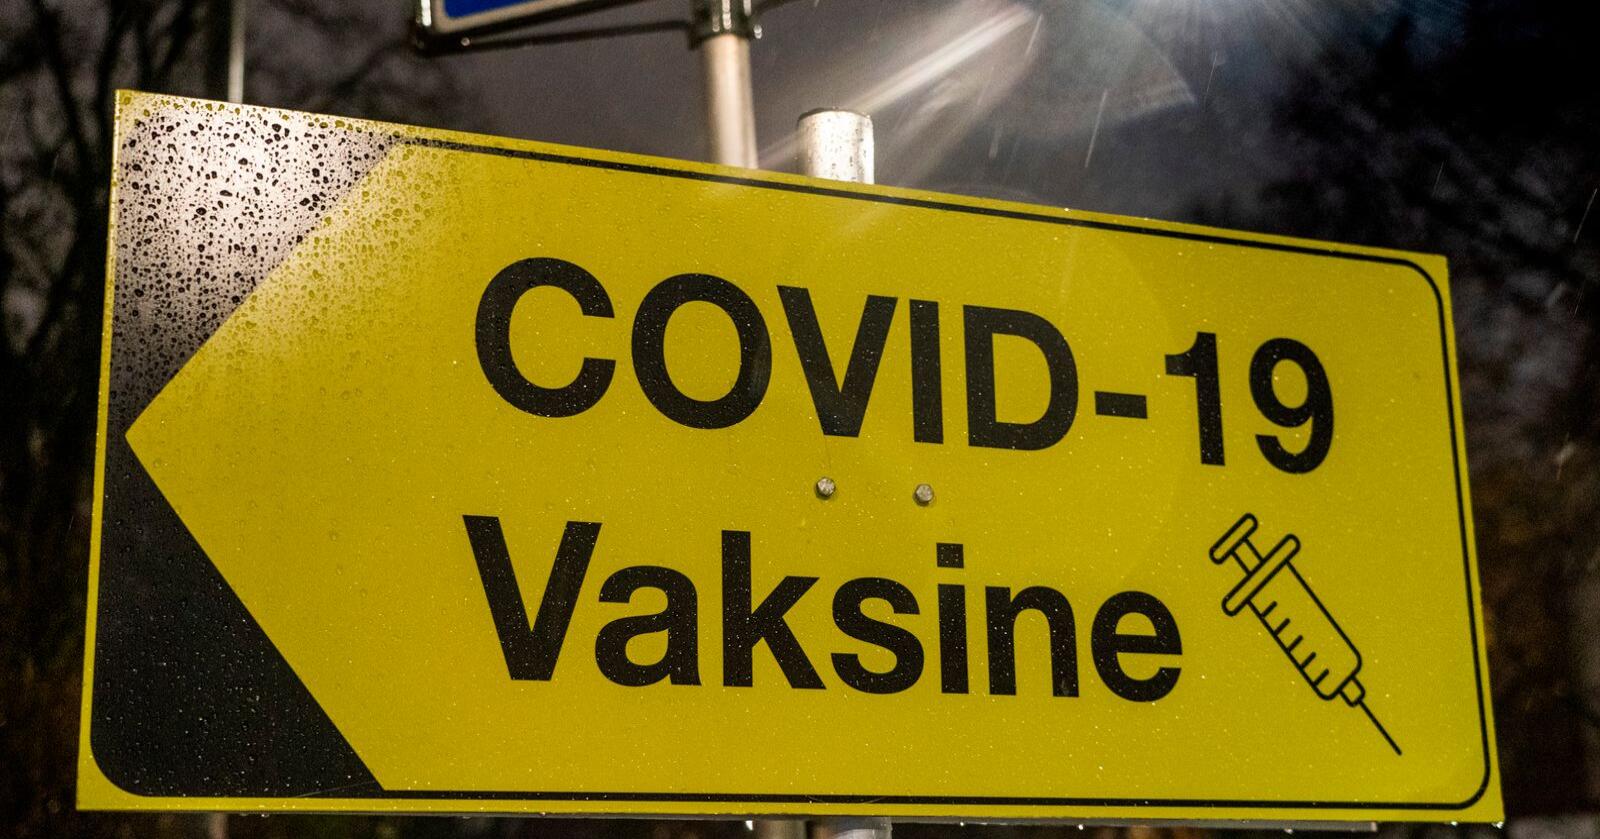 Enveis i vaksinepolitikken er dumt, skriver innsenderen. Foto: Terje Pedersen / NTB